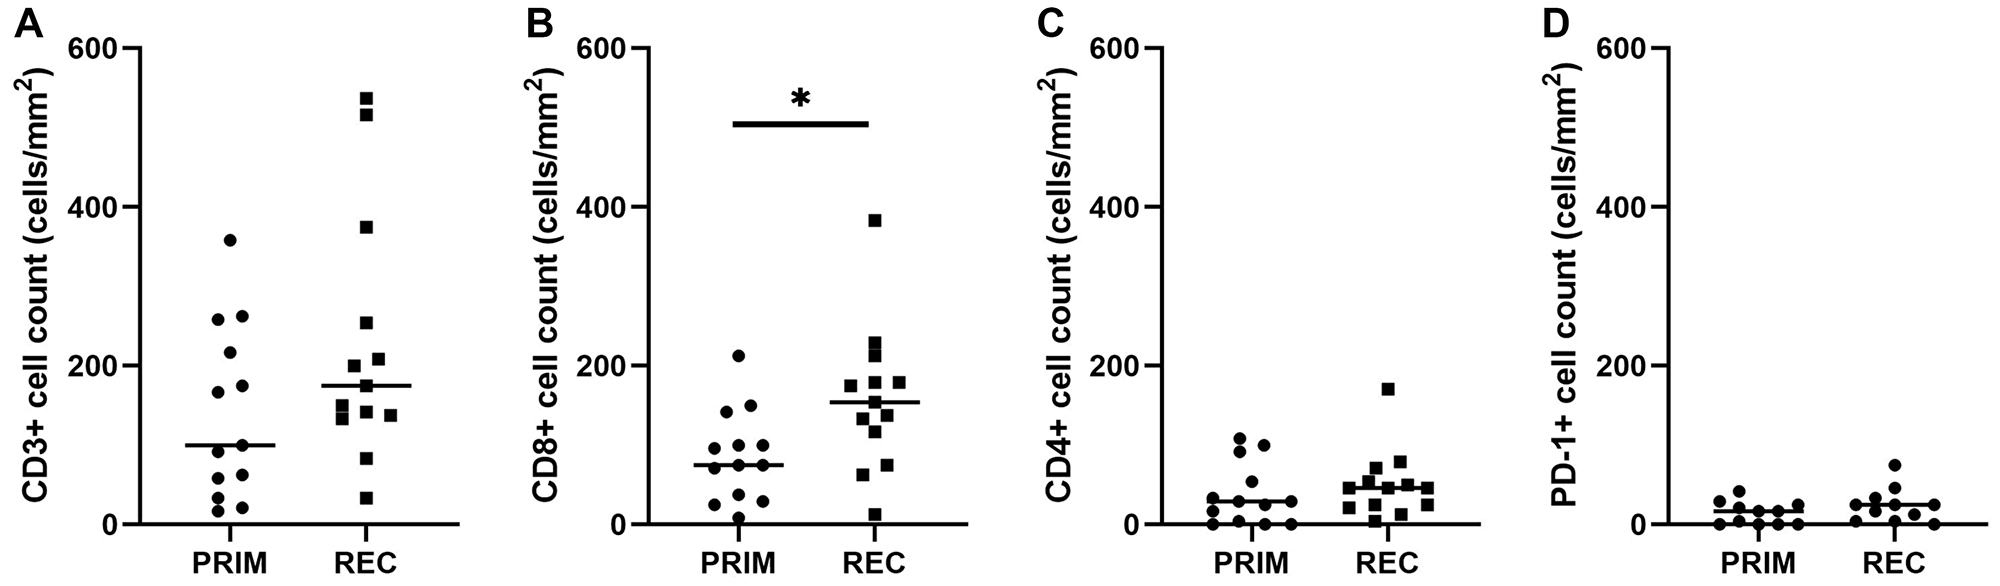 Figure 3: Quantitative TIL scores in primary and recurrent glioblastoma.